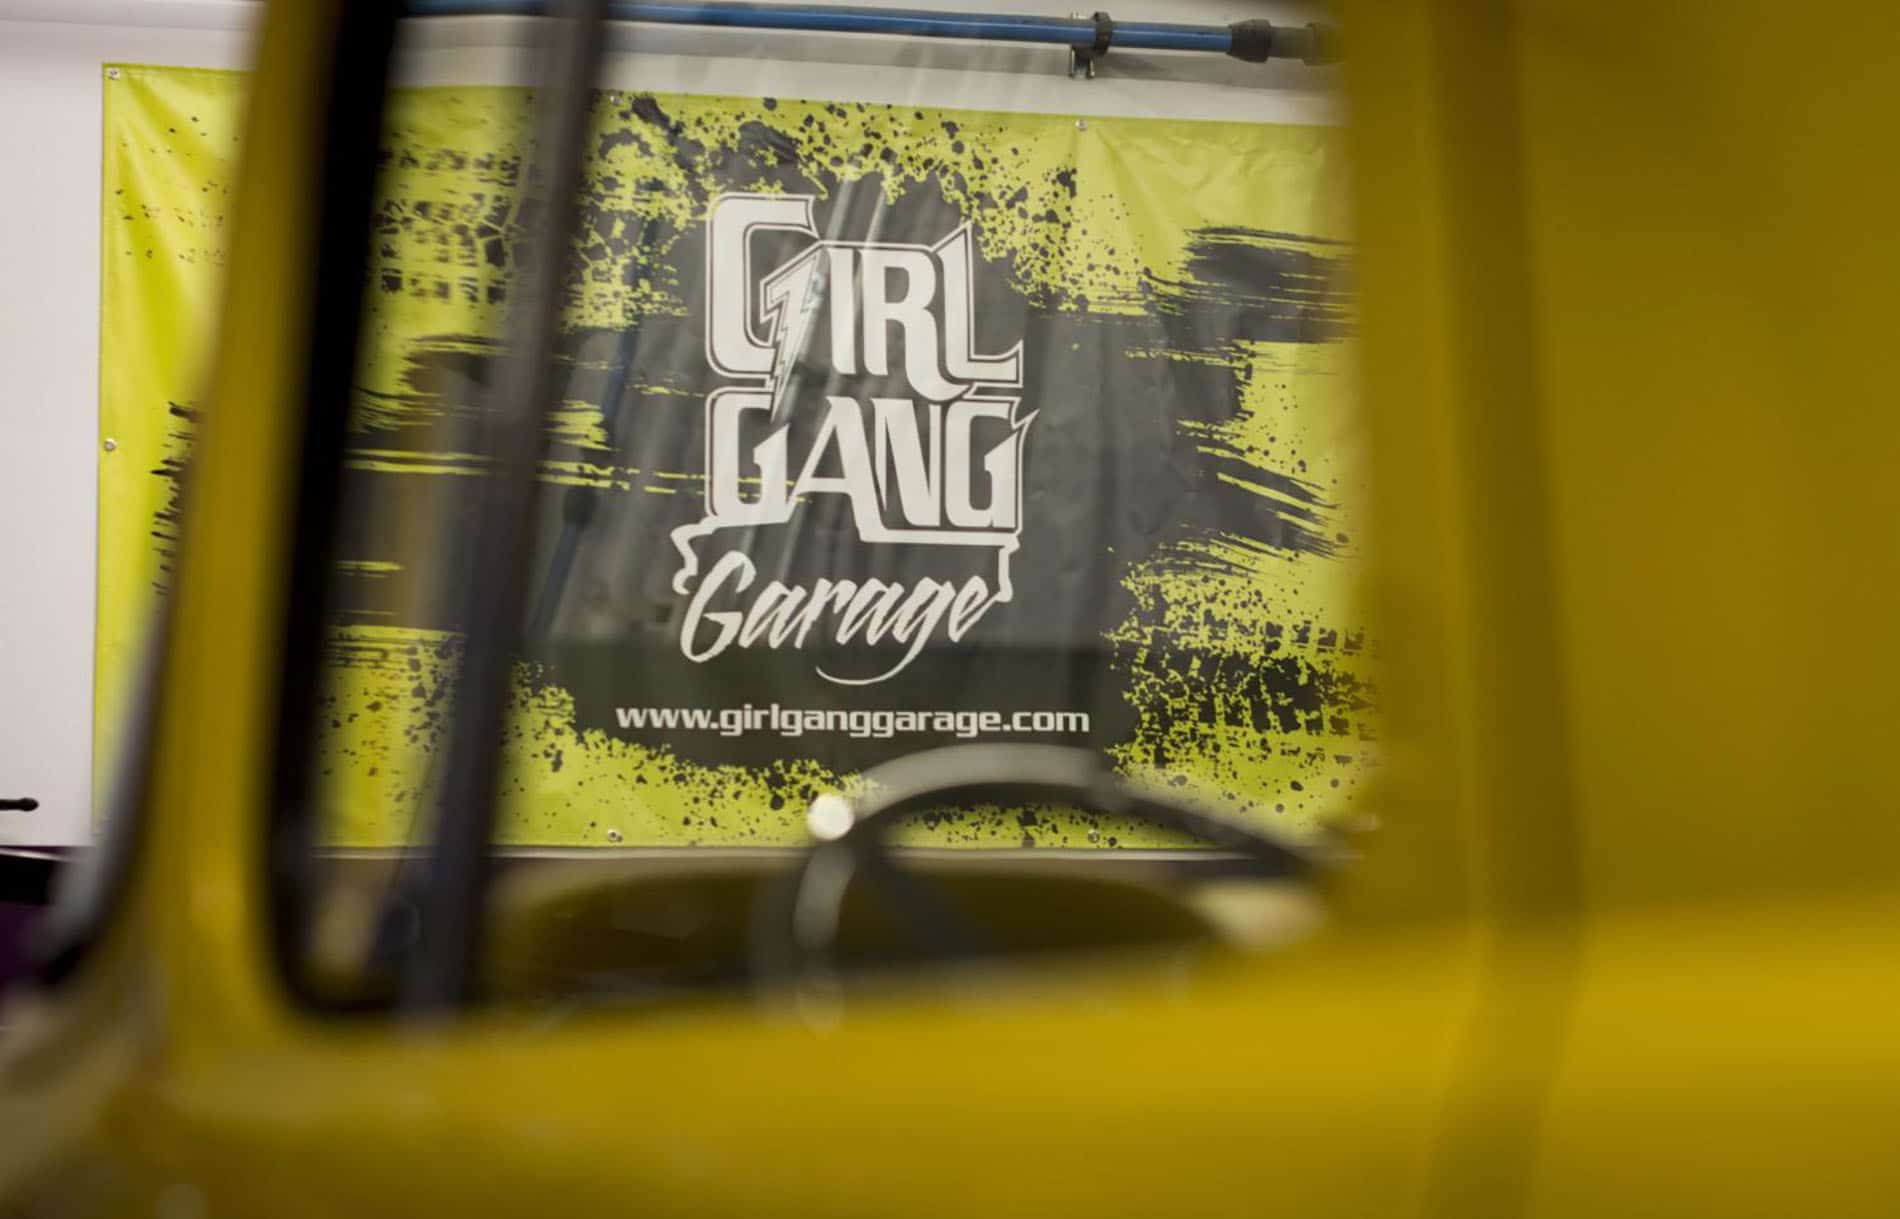 girl gang garage 07 20210325